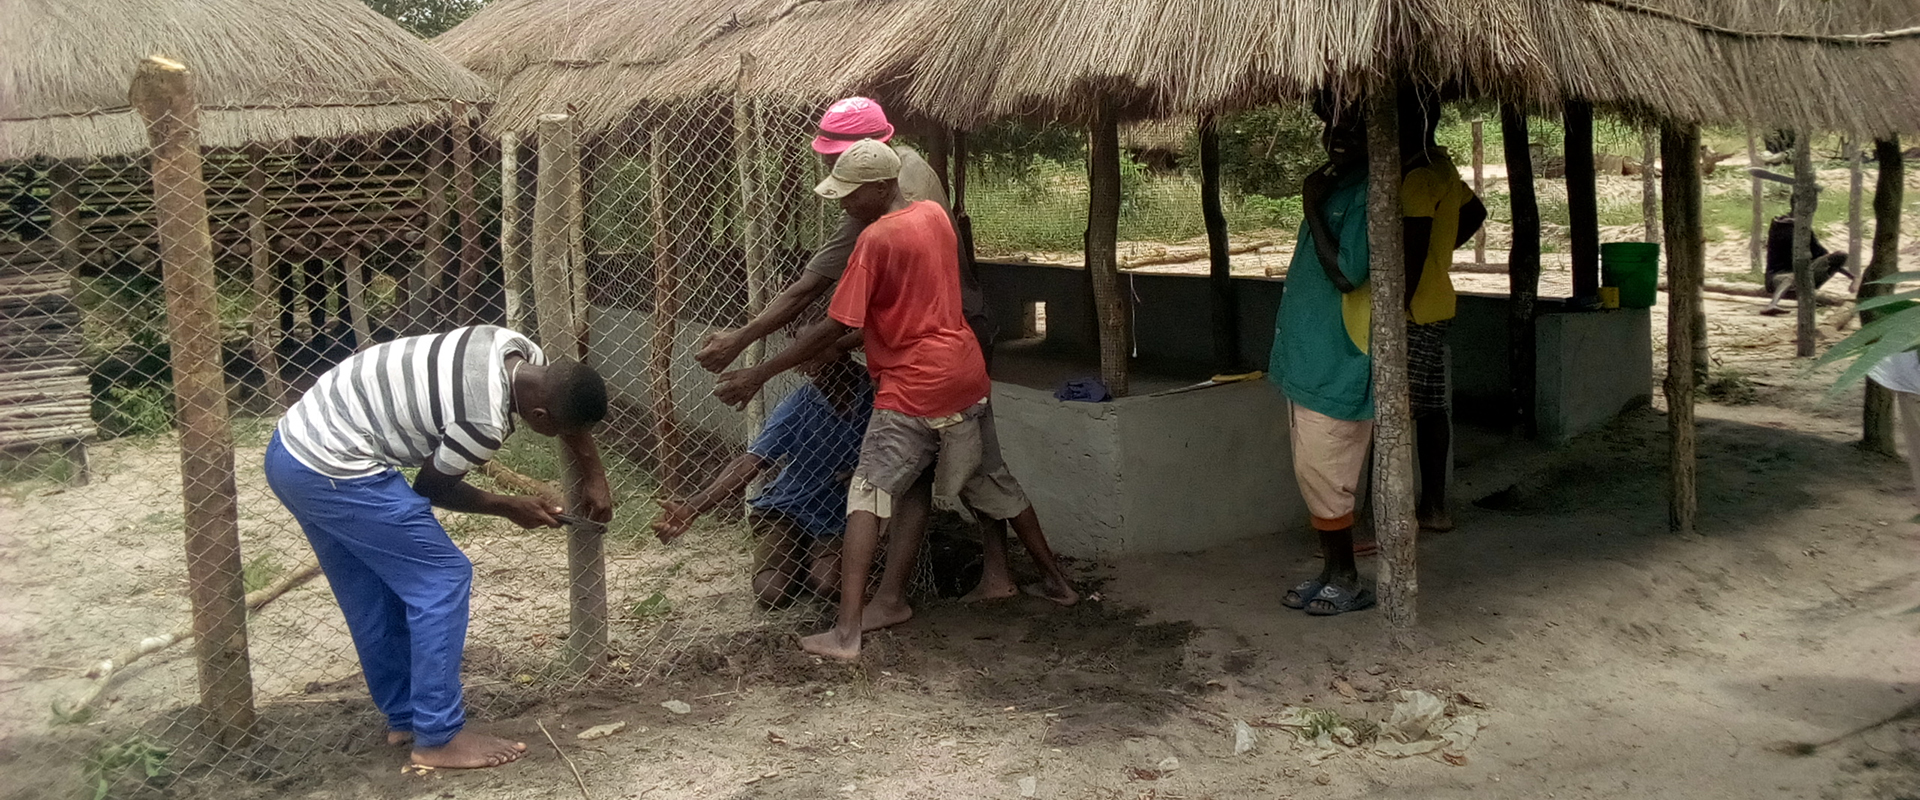 recinzione capre attività zootecniche mozambico mani tese 2019